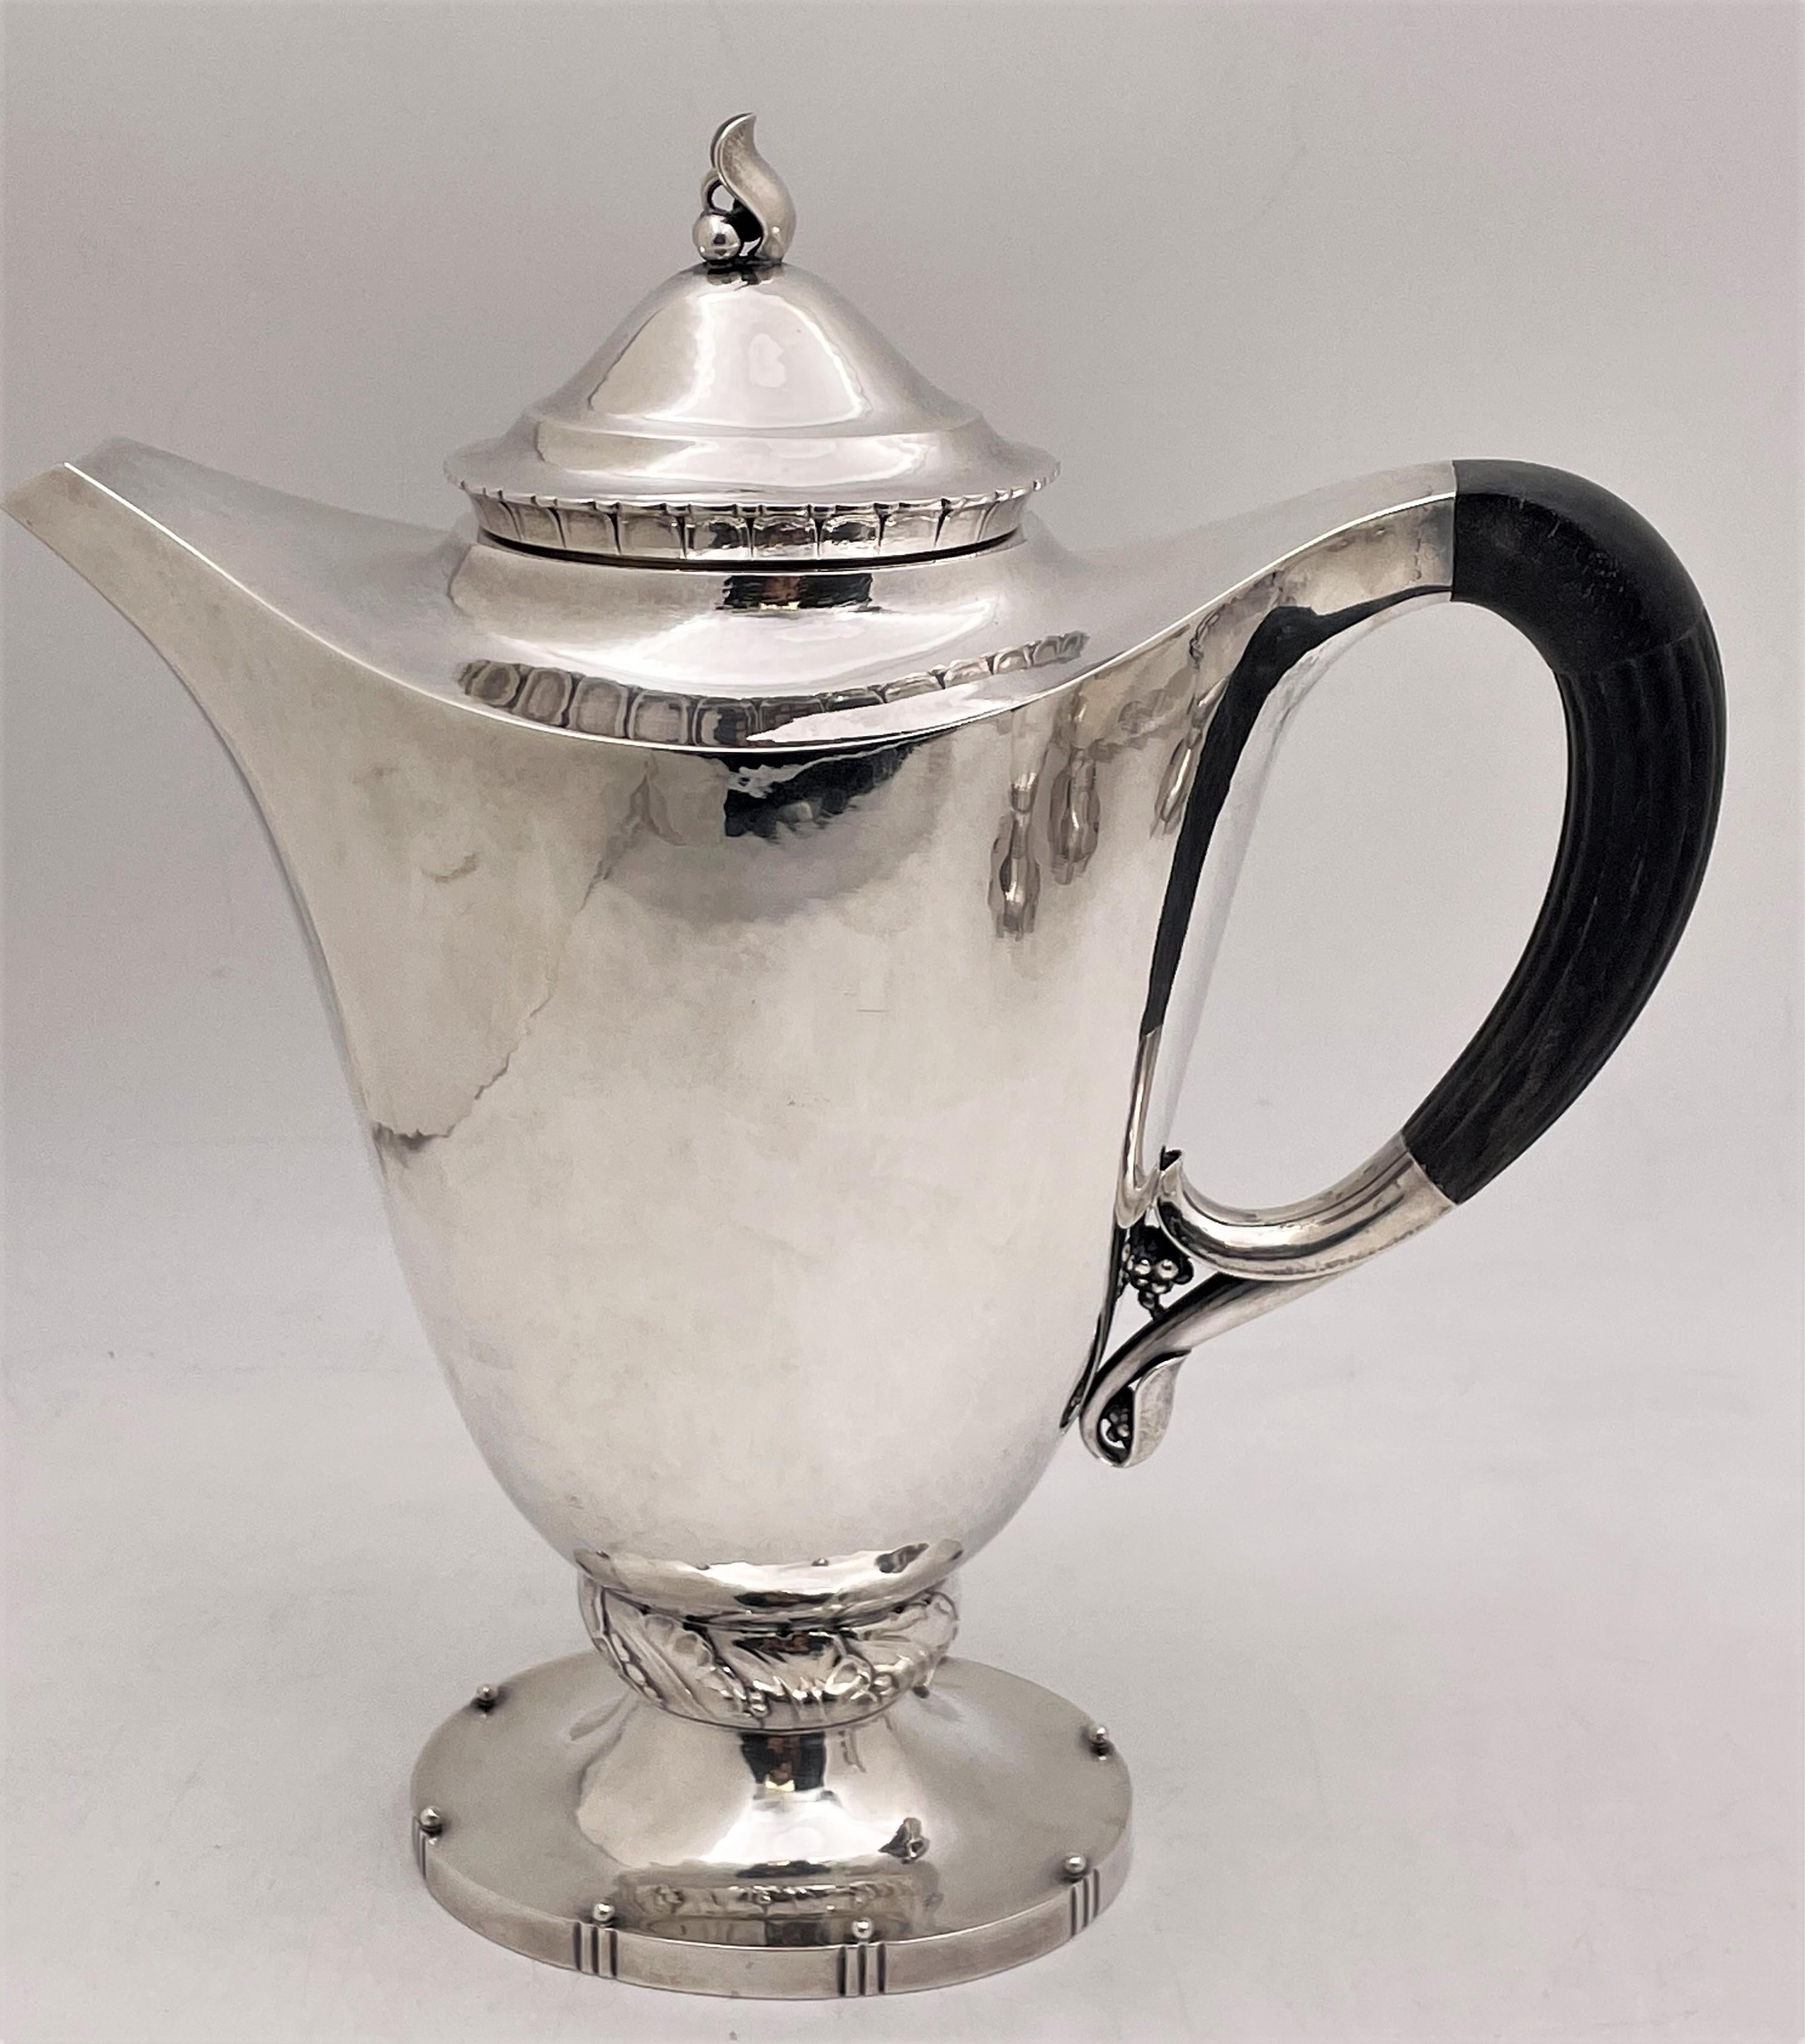 Seltenes 4-teiliges Tee- und Kaffeeservice von Georg Jensen aus Sterlingsilber, alle schön handgehämmert, mit exquisiten Naturmotiven und eleganten Proportionen, entworfen von Georg Jensen um 1910/1920, bestehend aus:

- eine Kaffeekanne mit einer